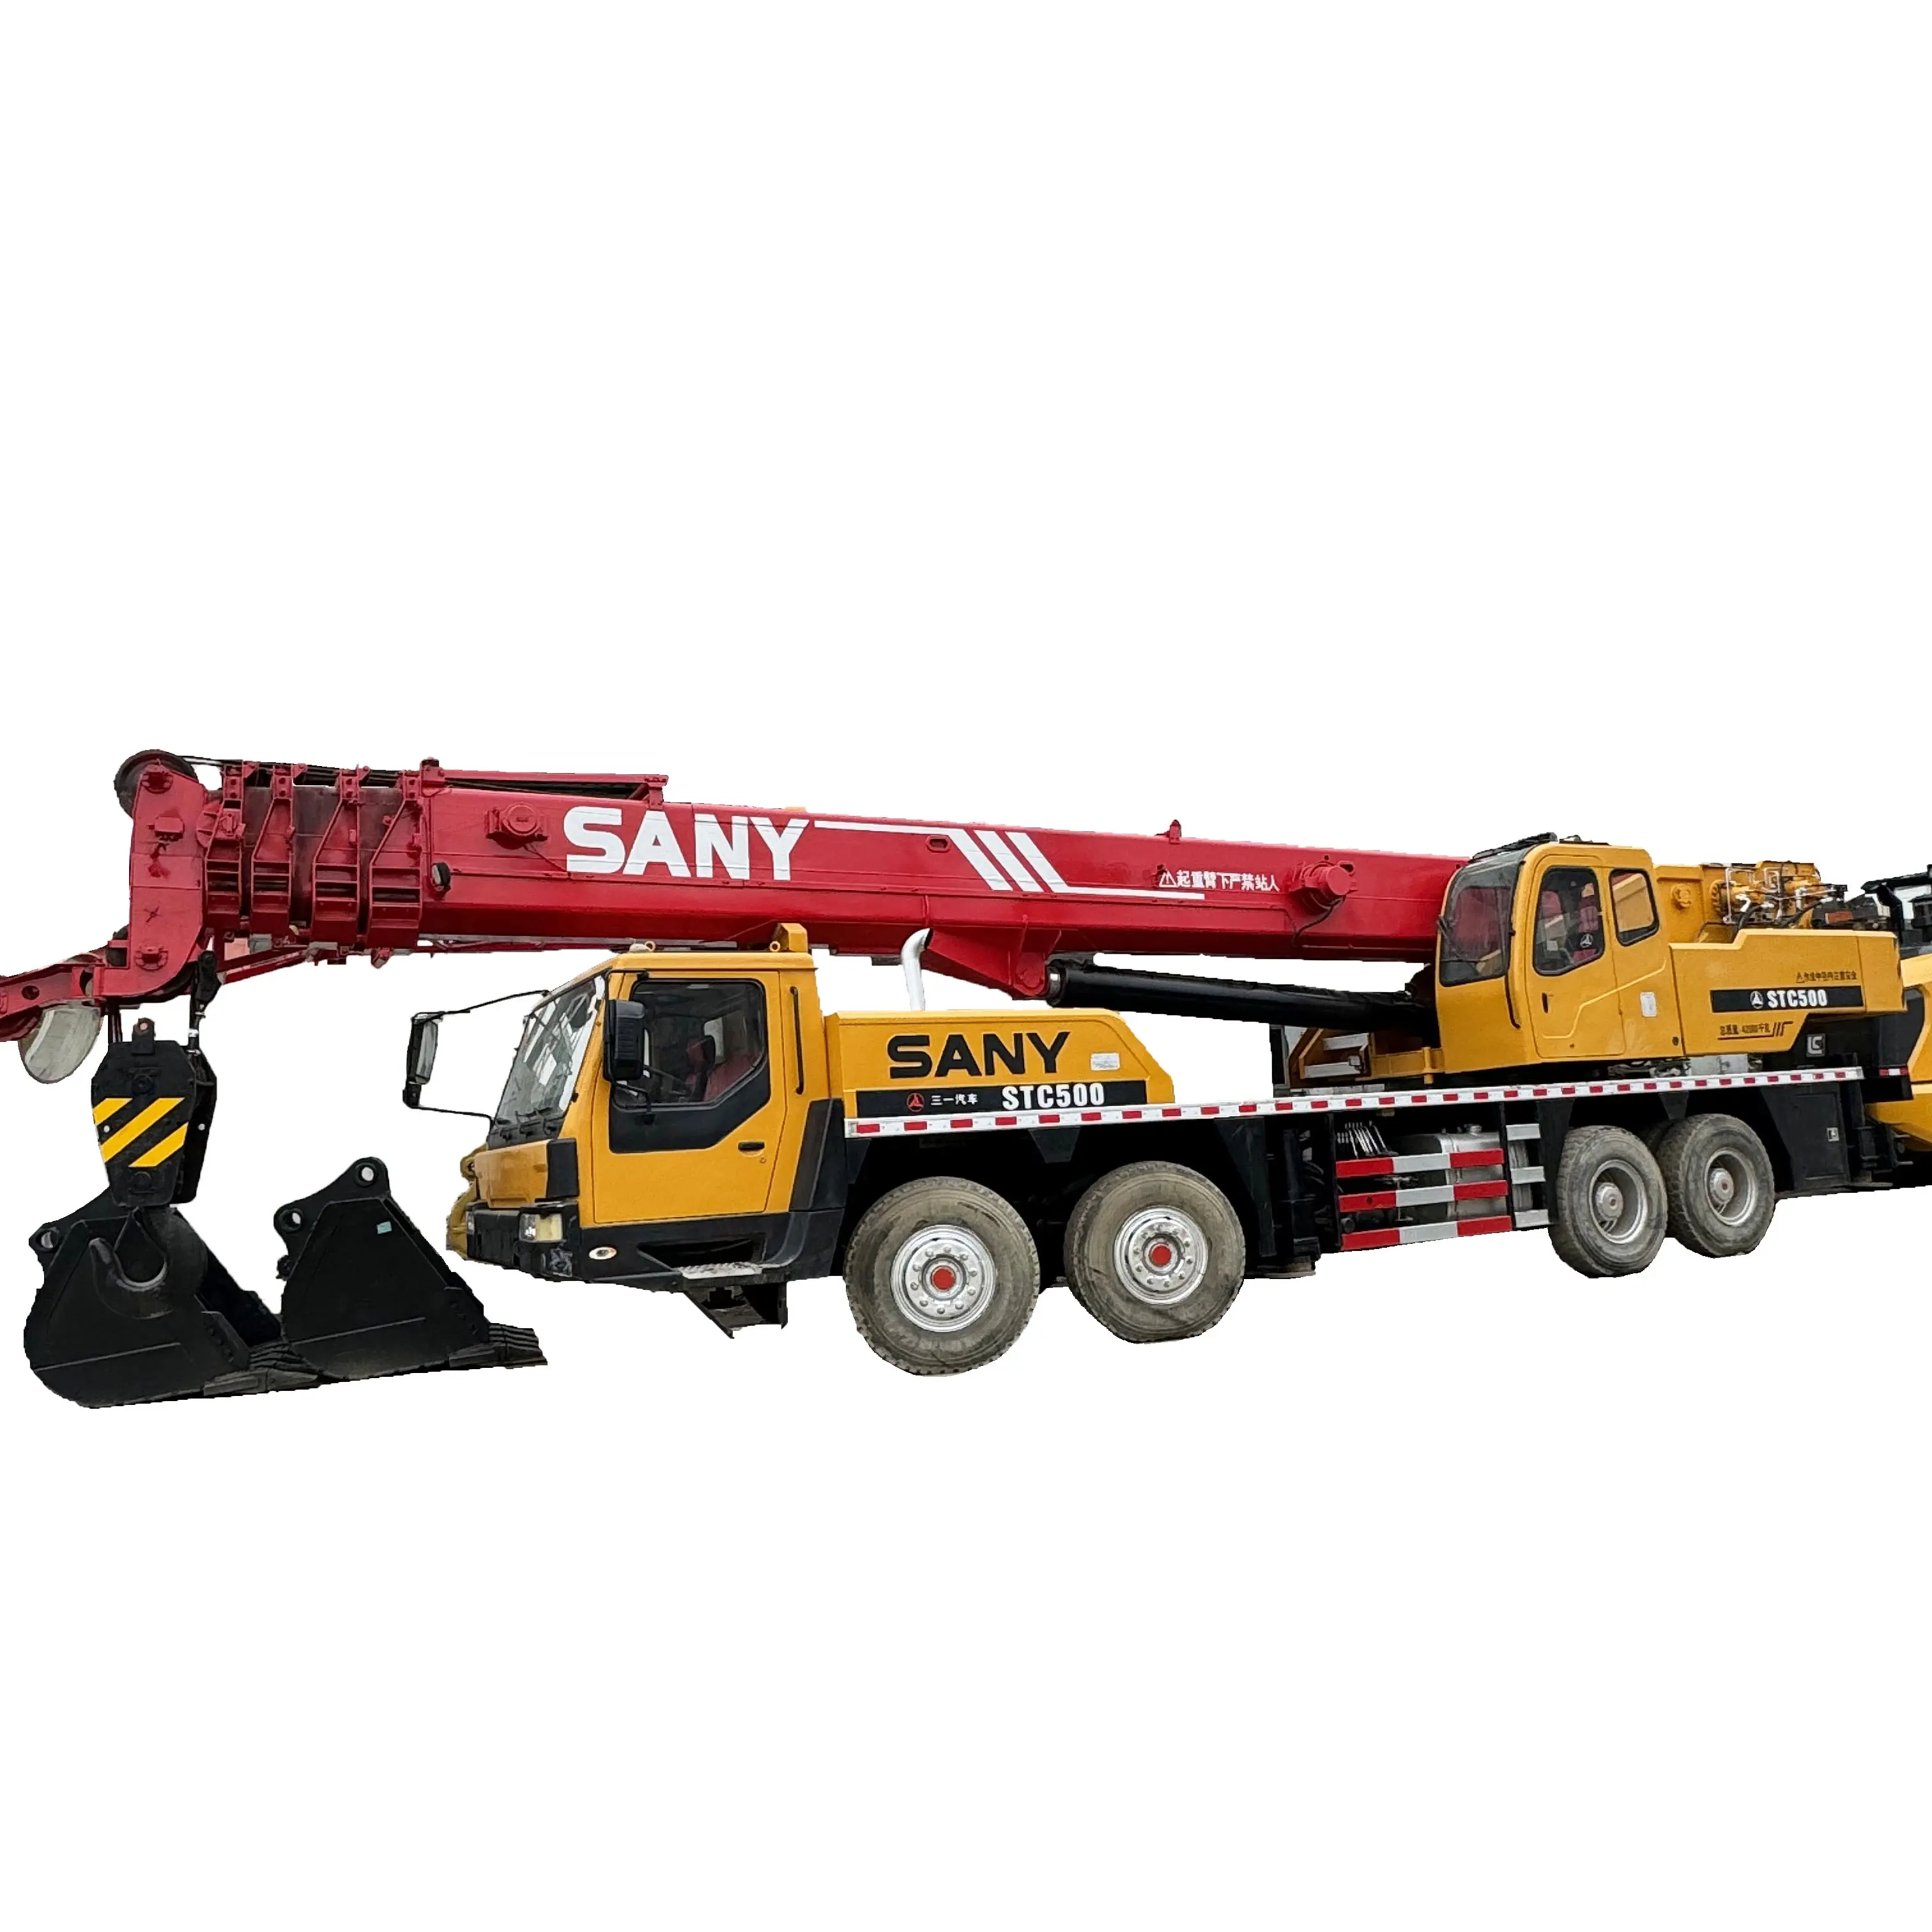 50 Ton usato camion gru Sany STC500 di seconda mano idraulico gru Mobile a buon mercato prezzo usato camion gru